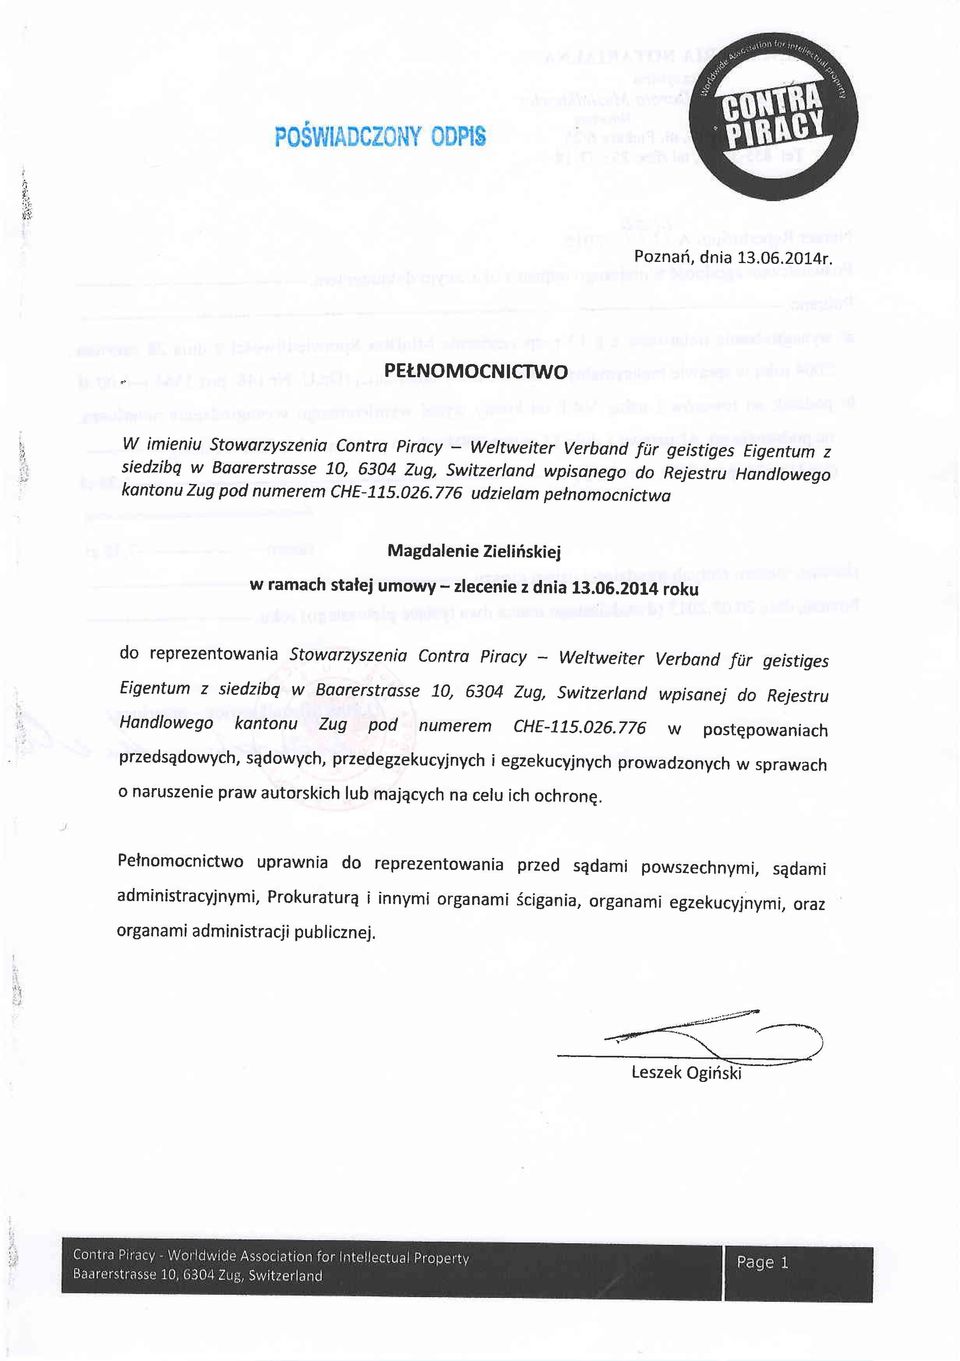 pod numerem che-71s.026.776 udzielam pelnomocnictwo Magdalenie Zieliriskiej w ramach stalej umowy - zlecenie z dnia 13.05.